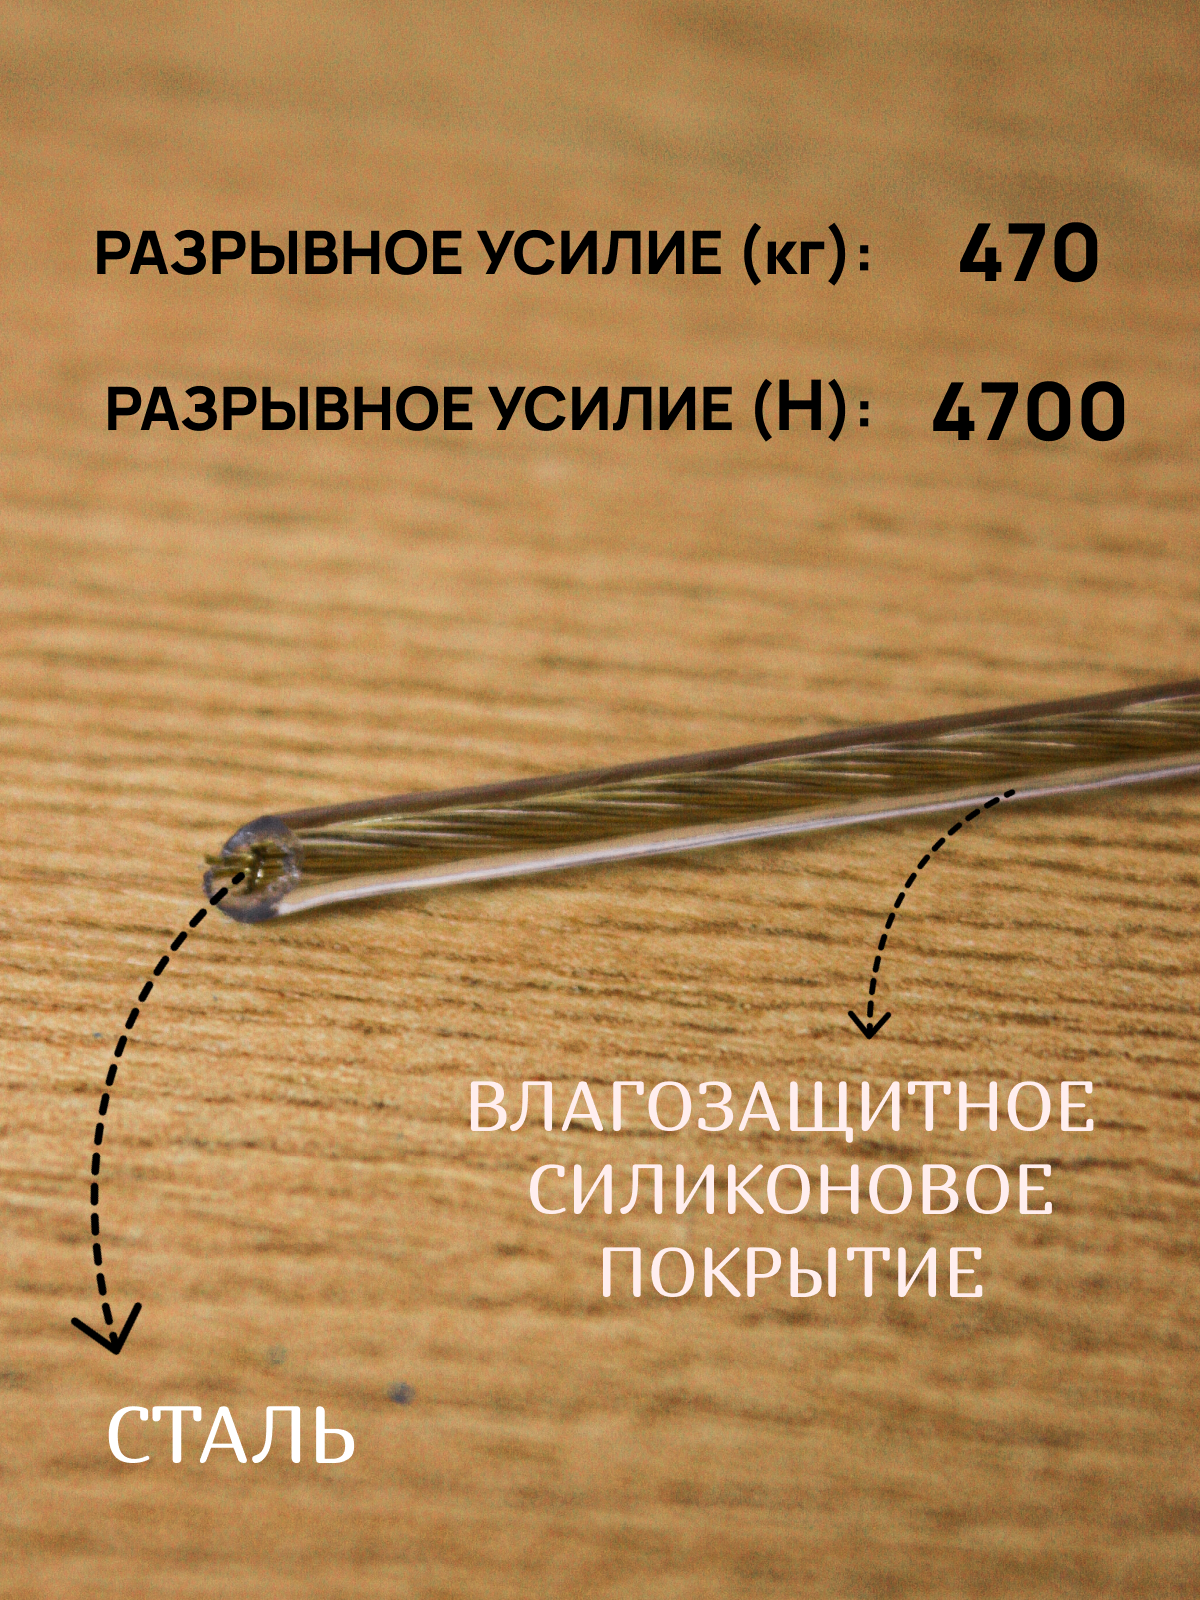 Трос металлополимерный/Трос такелажный/металлическое изделие с полимерным покрытием, диаметр 4мм - фотография № 2